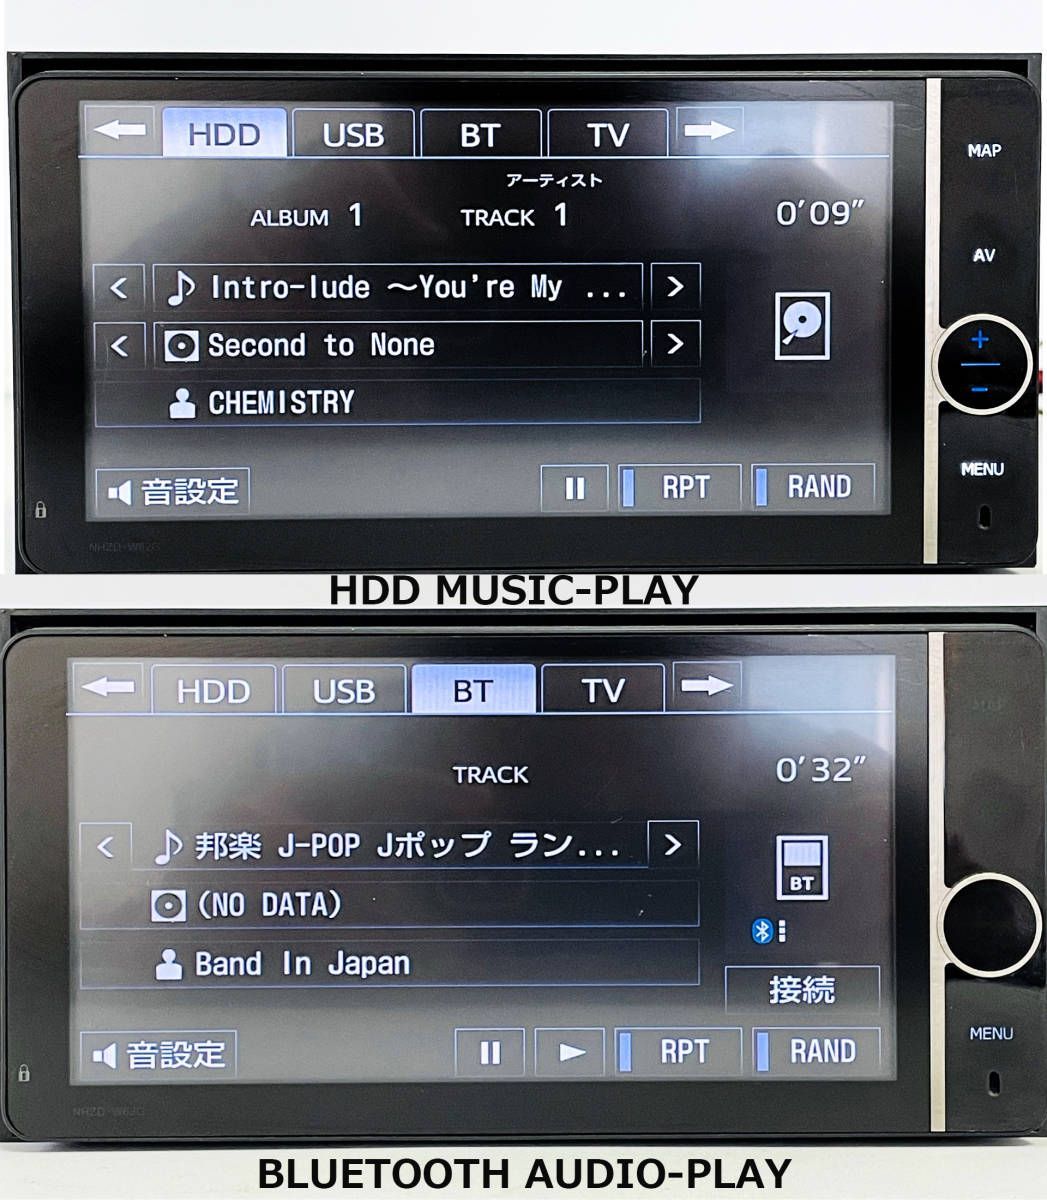 トヨタカーナビ NHZD-W62G HDDナビゲーション【送料無料】